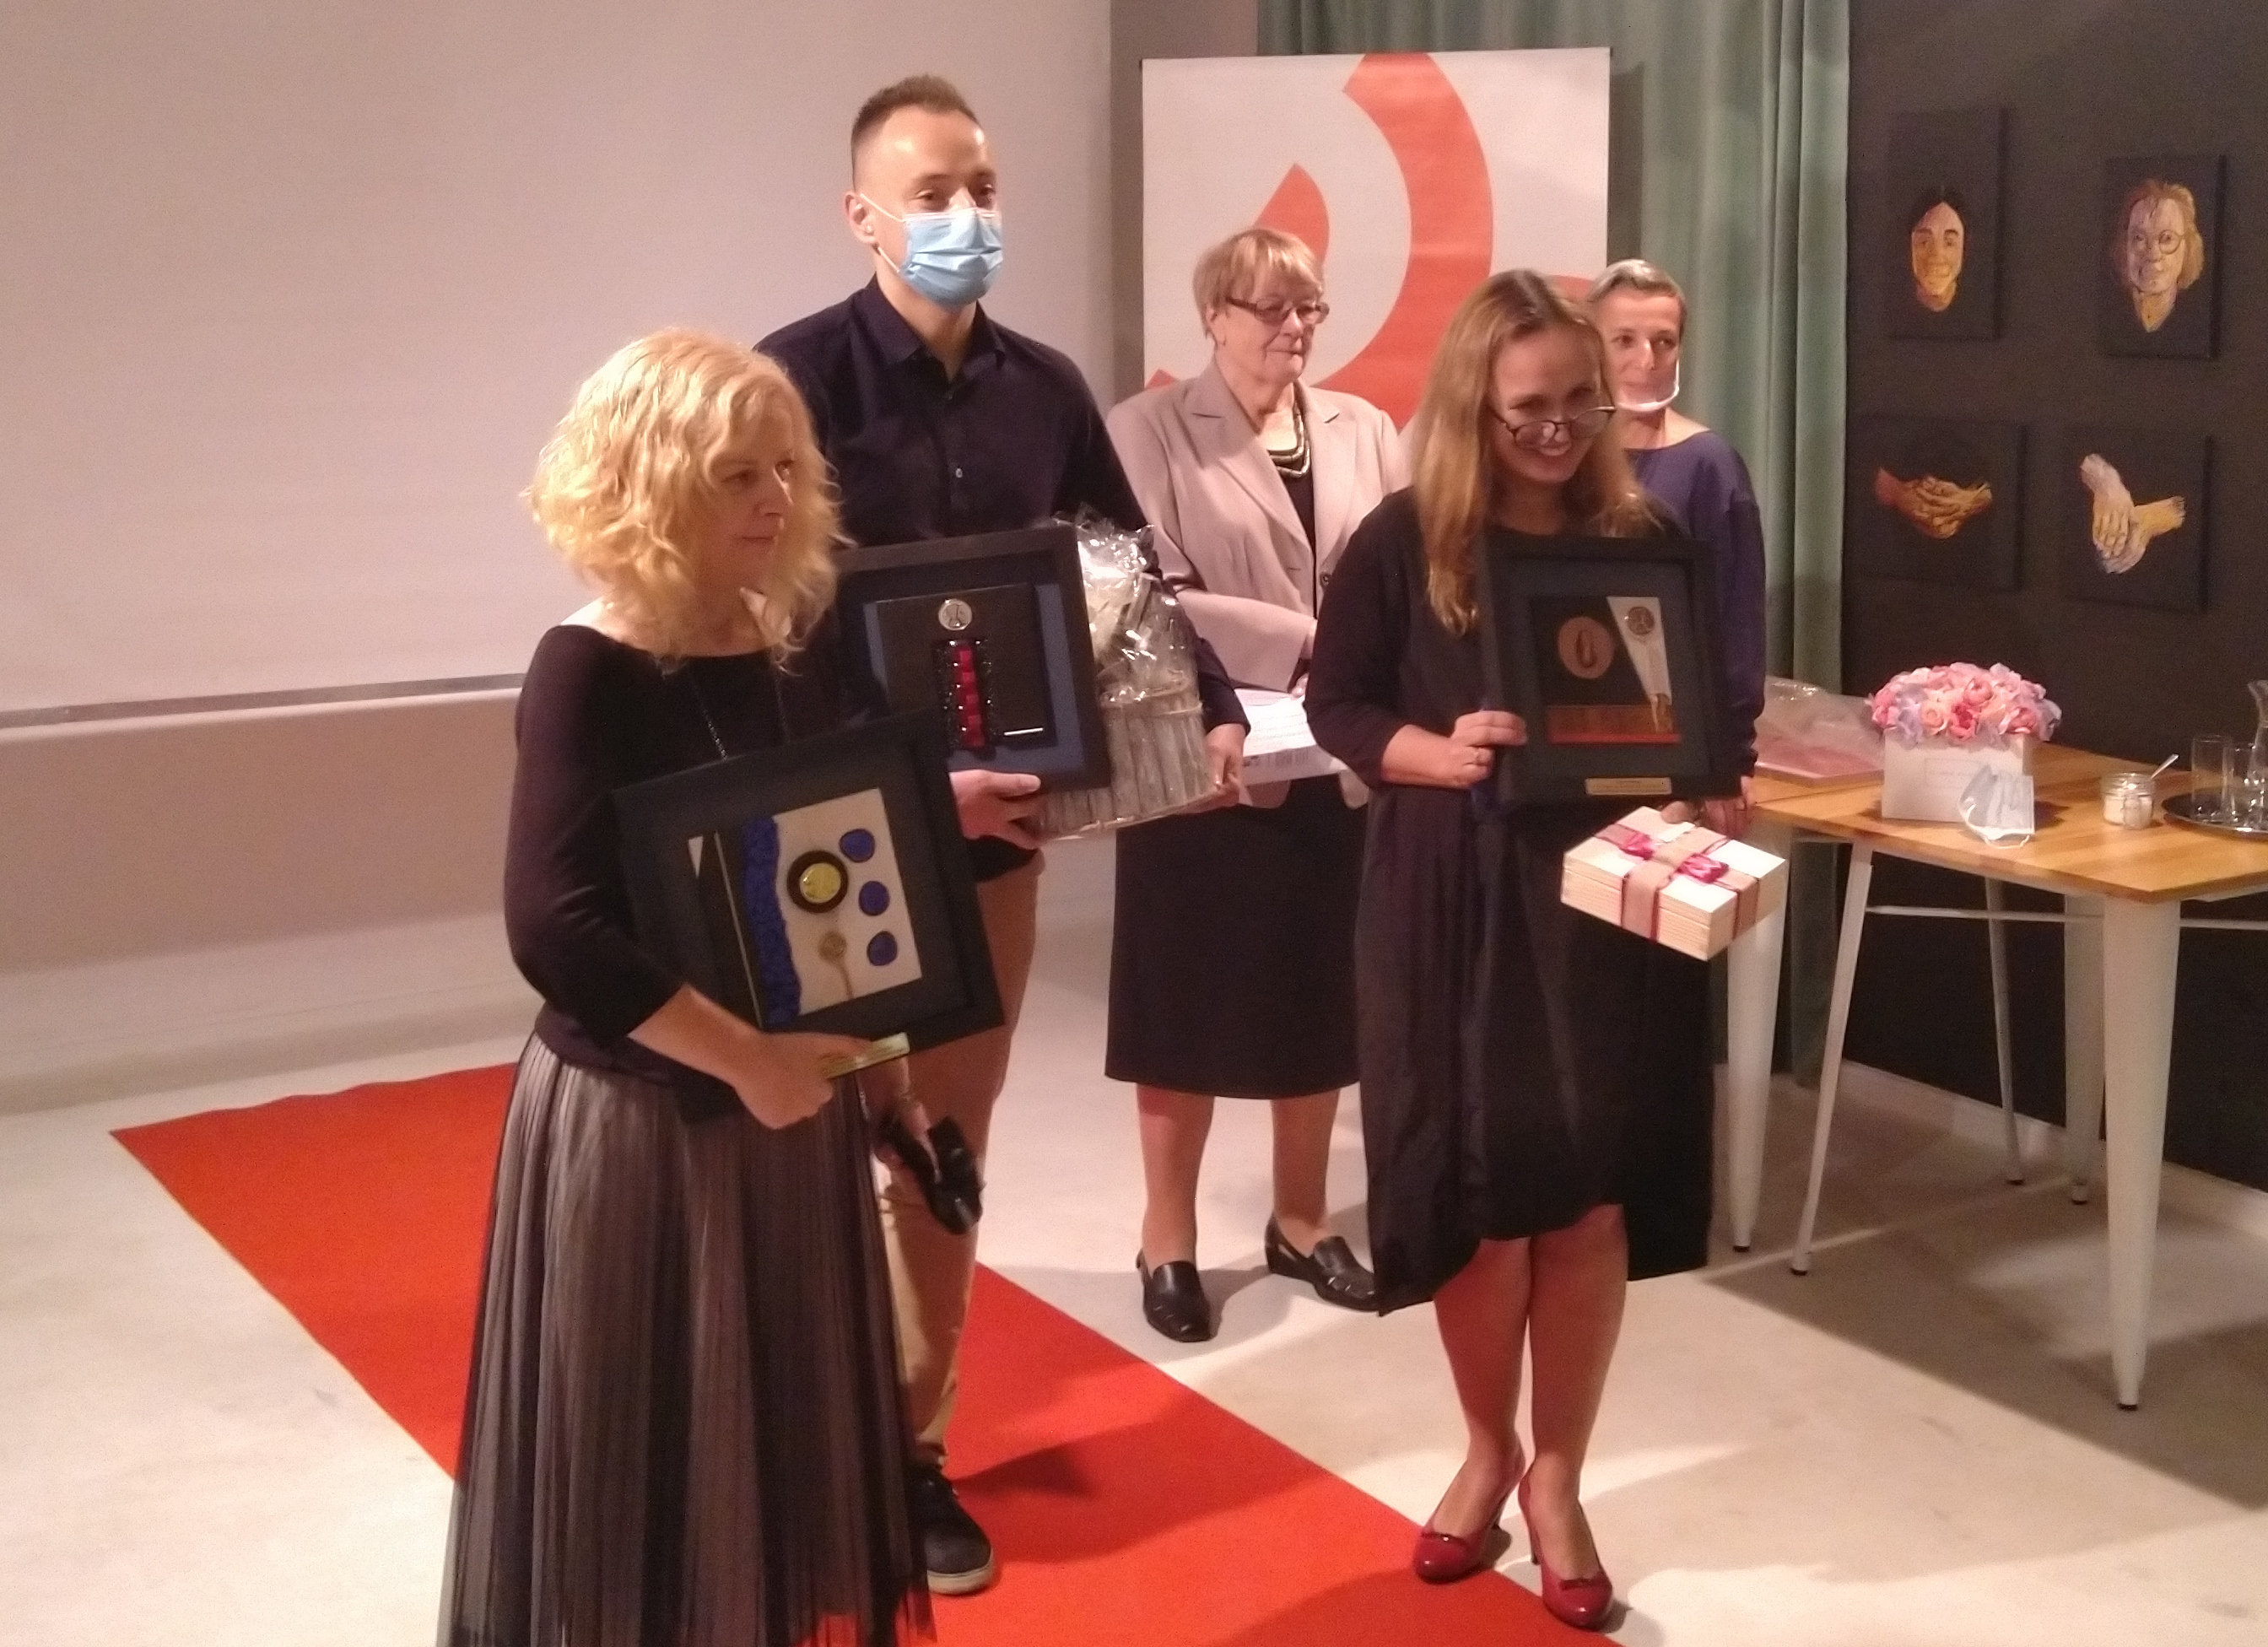 Laureaci konkursu "Twarze Ubóstwa" w trakcie Gali rozdania nagród: Aleksandra Warecka, Marek Szymaniak, Edyta Krześniak